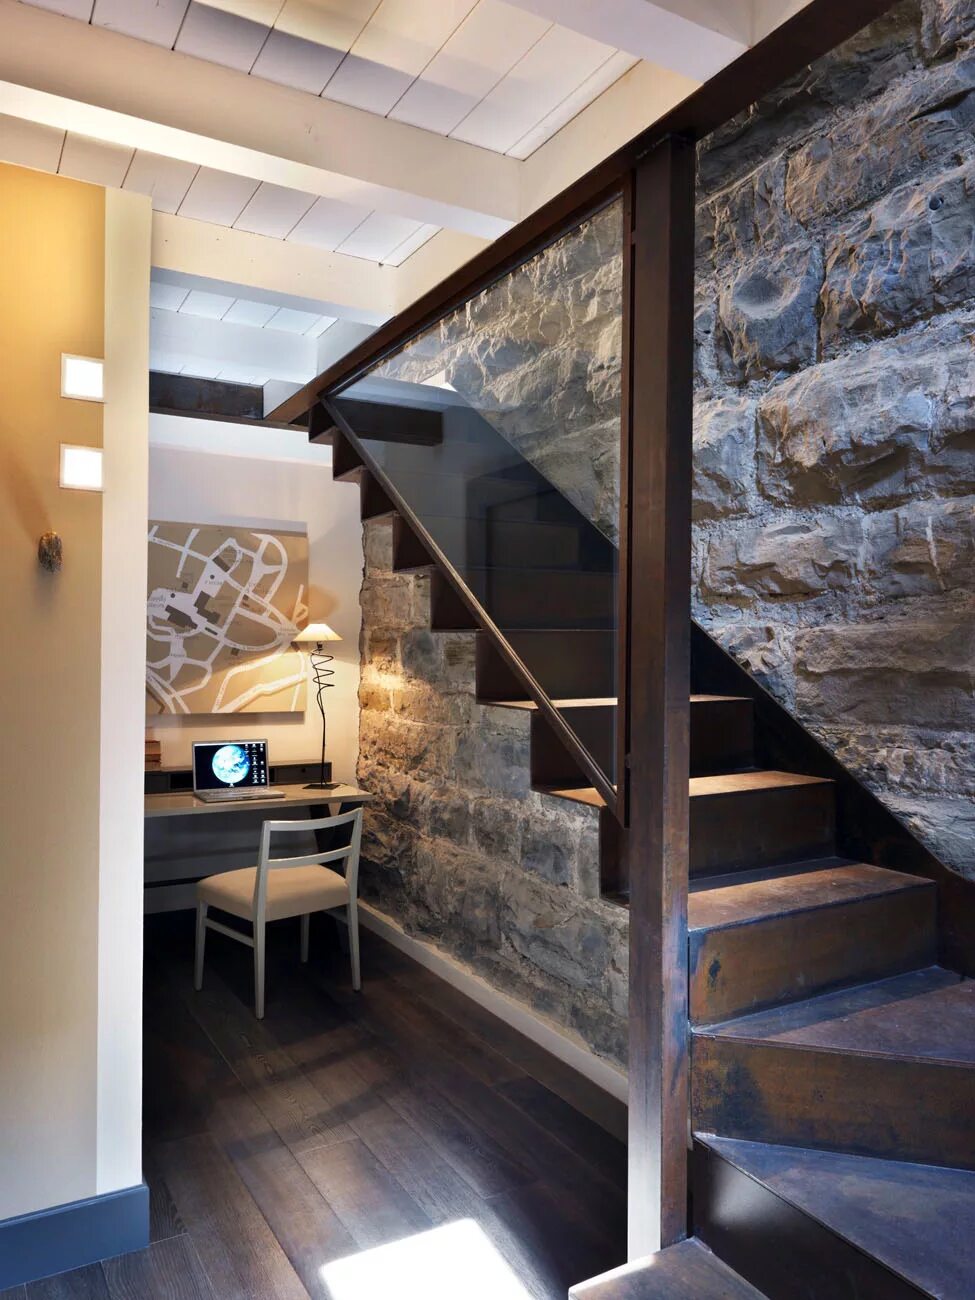 Как закрыть первый этаж. Лестница в интерьере. Лестница в цокольный этаж. Камень и дерево в интерьере квартиры. Внутренняя отделка дома в стиле лофт.